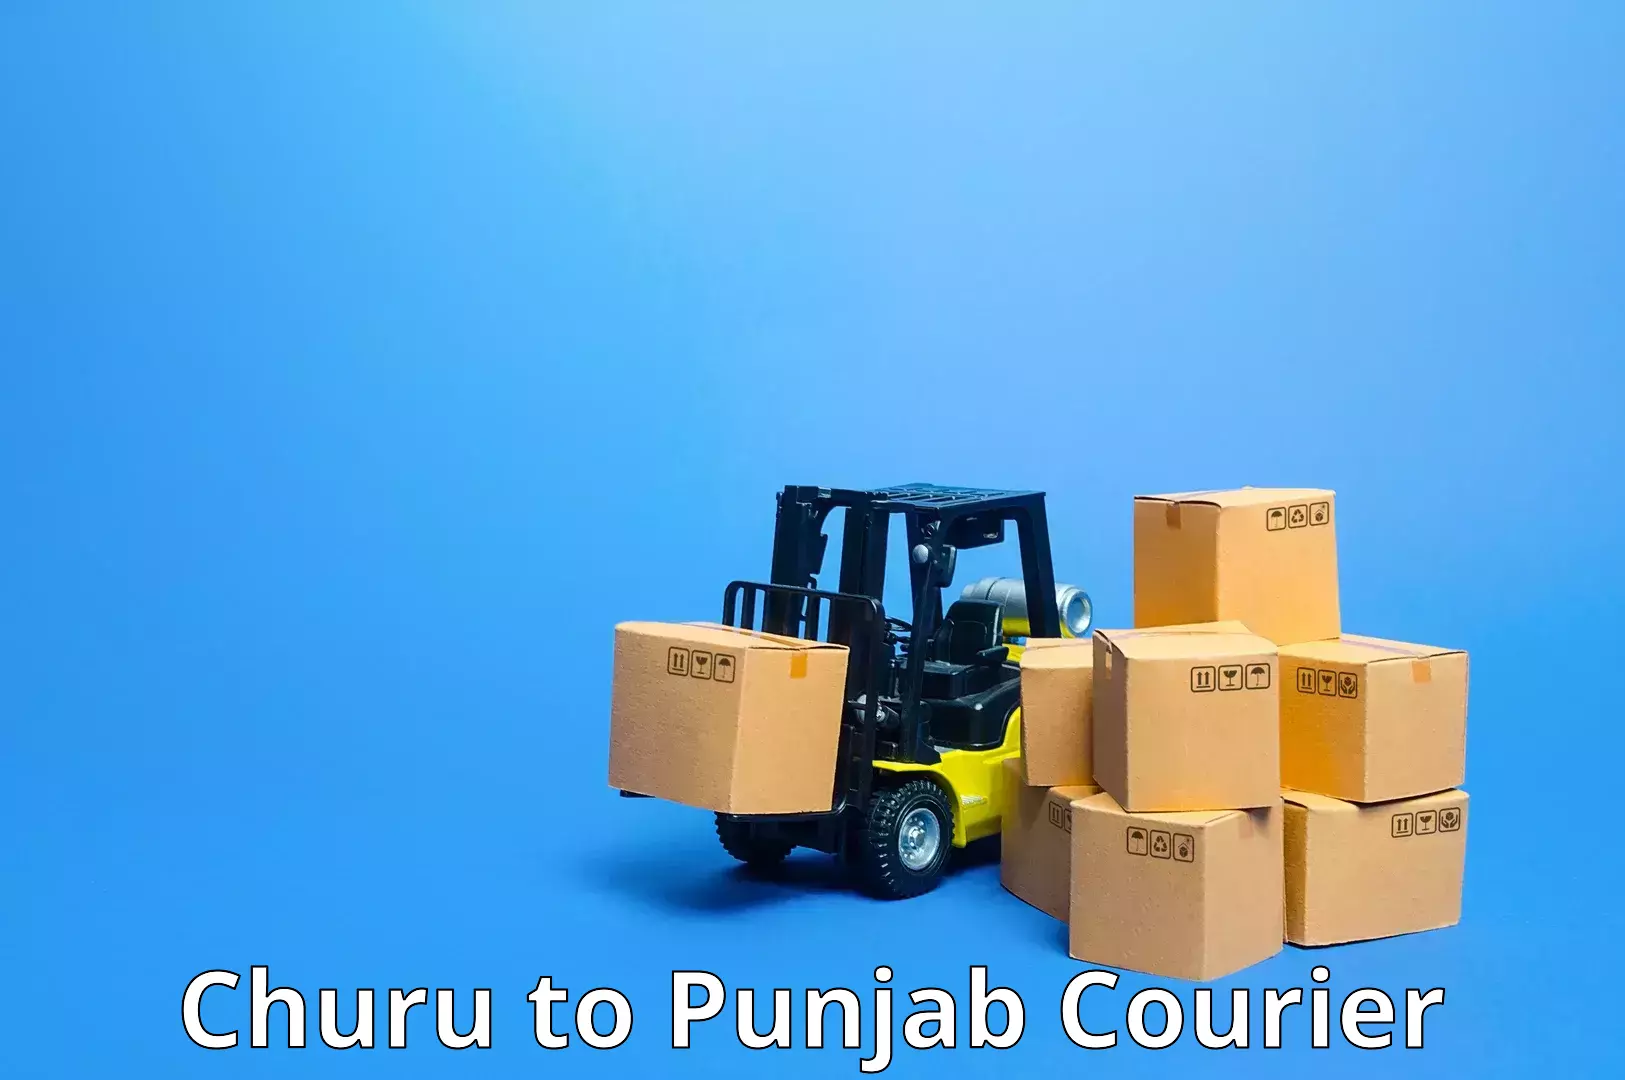 Courier service partnerships in Churu to Nangal